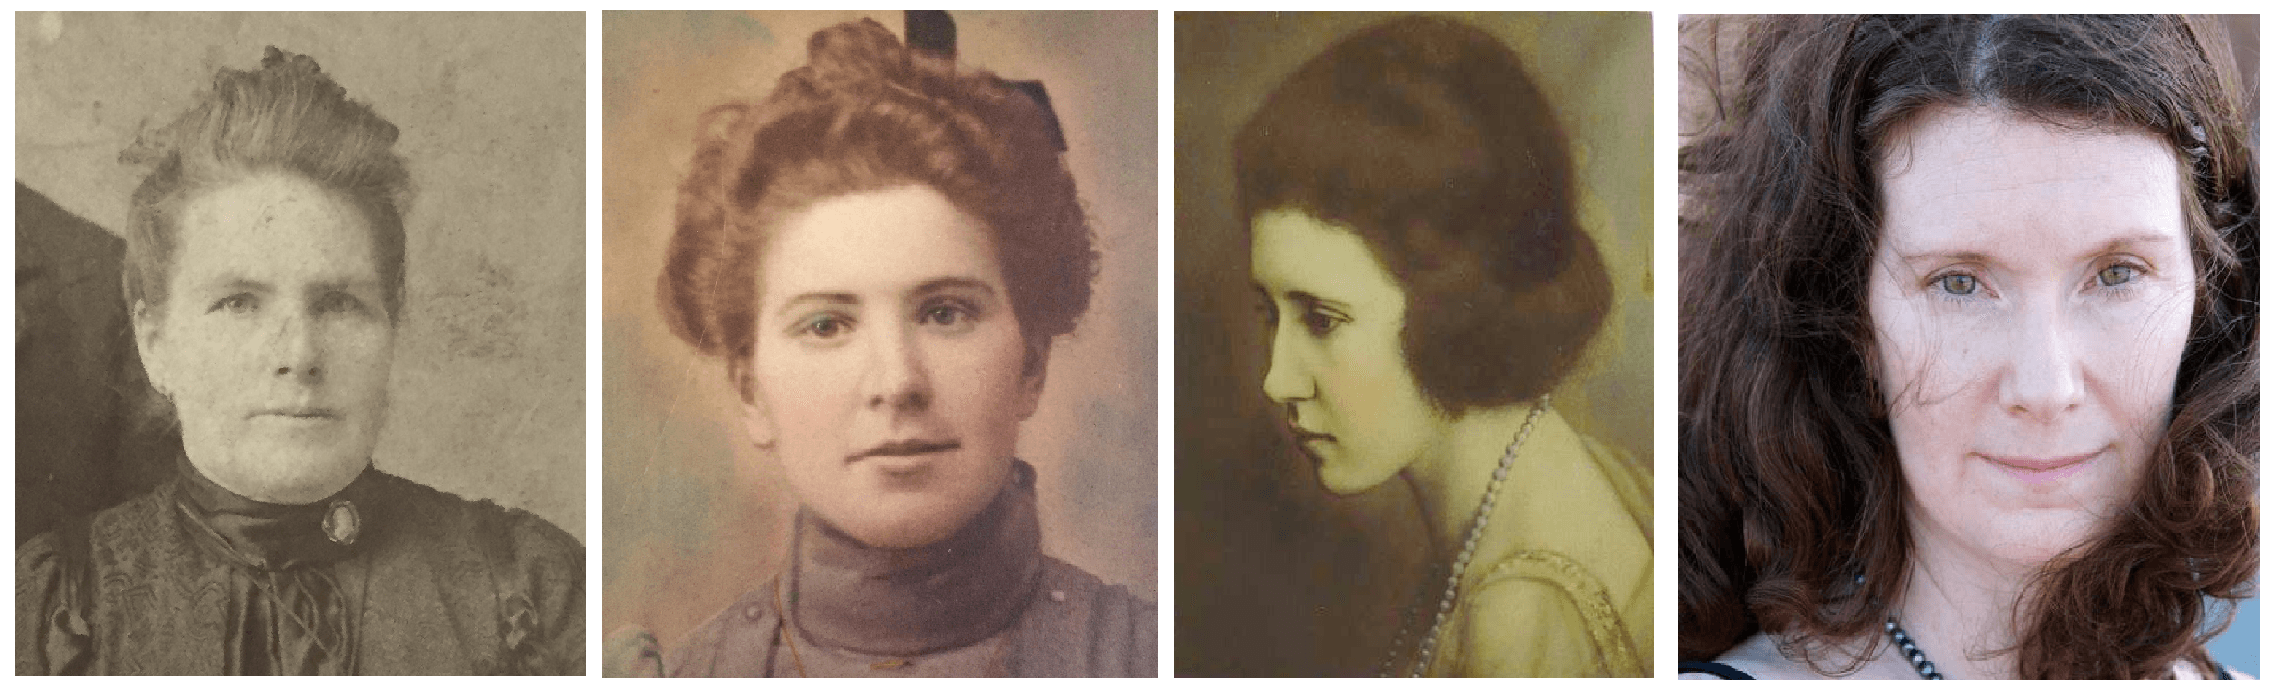 Från vänster, Margies gammelmormorsmor Mary Maher, gammelmormor Margaret ”Maggie” (Maher) McKeown, mormor Margaret McKeown och Margie Wirth.